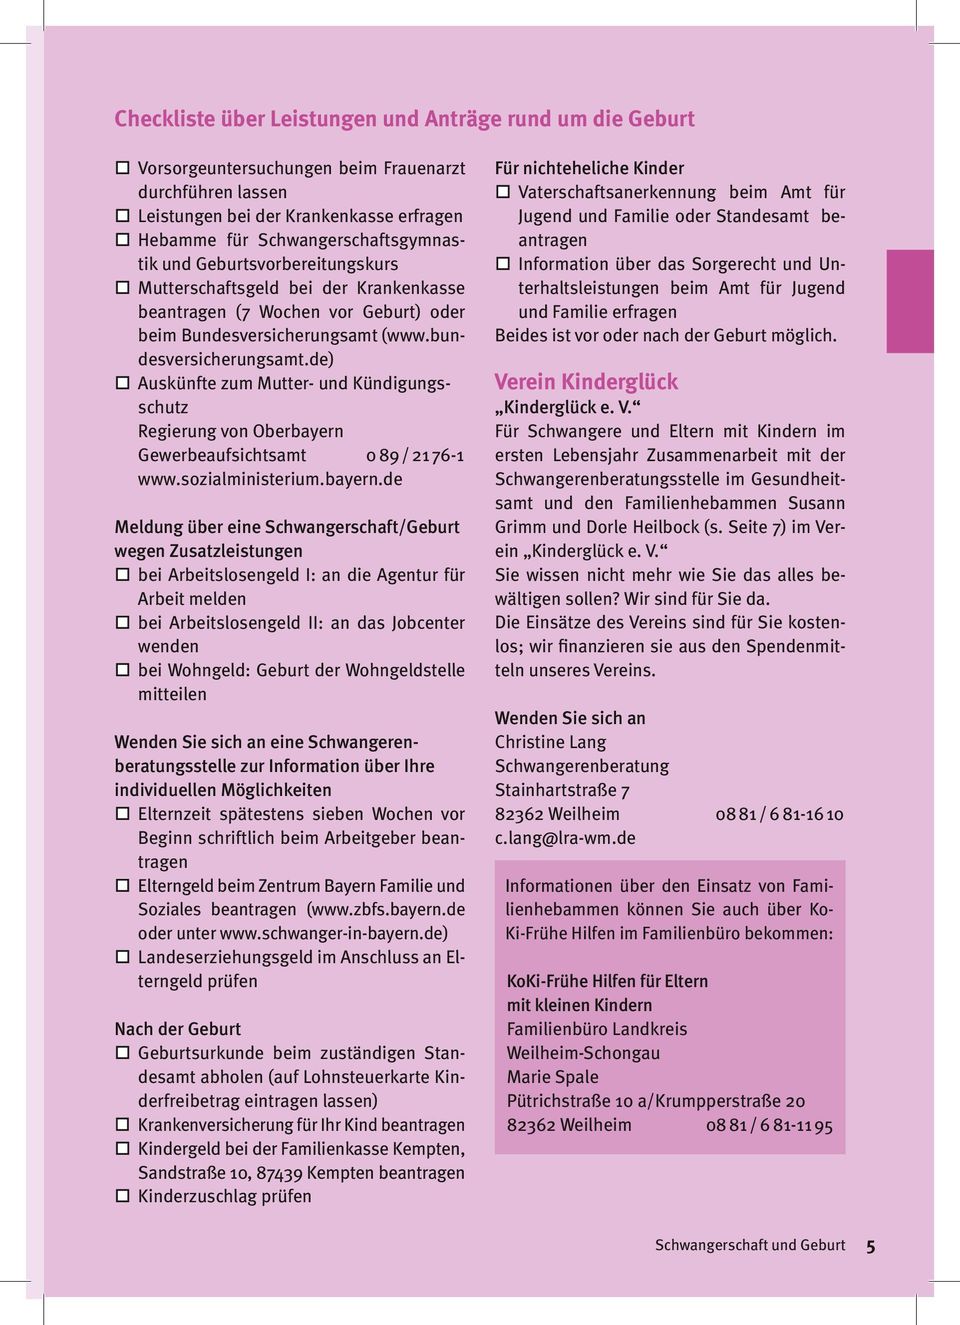 de) Auskünfte zum Mutter- und Kündigungsschutz Regierung von Oberbayern 